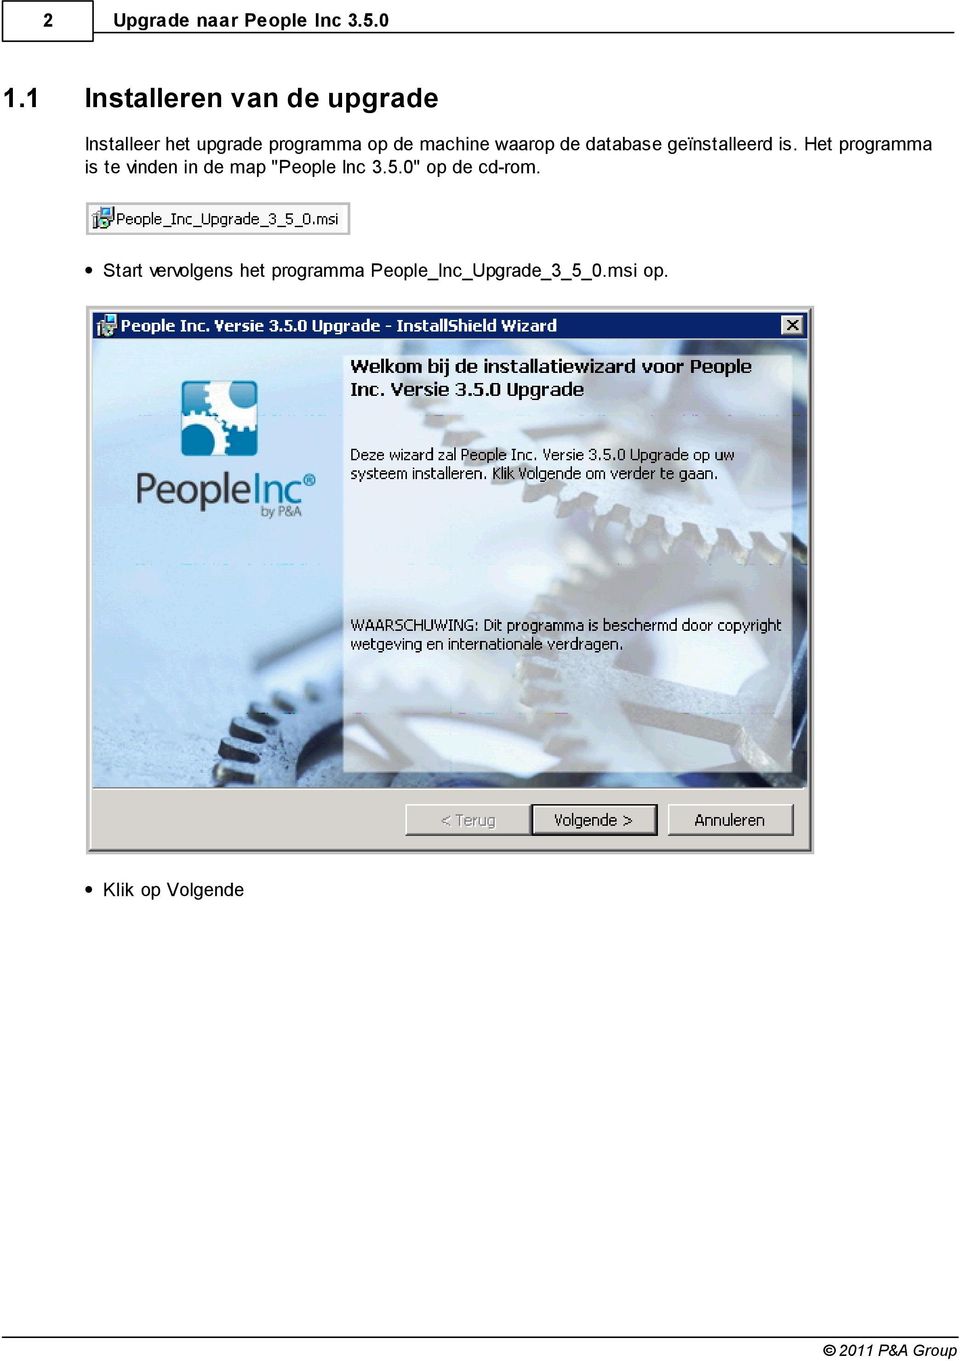 Het programma is te vinden in de map "People Inc 3.5.